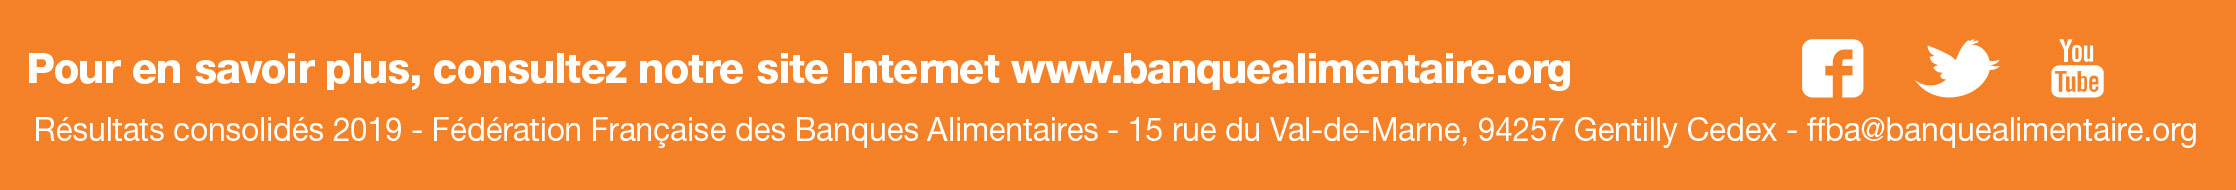 Pour en savoir plus, consultez notre site Internet www.banquealimentaire.org